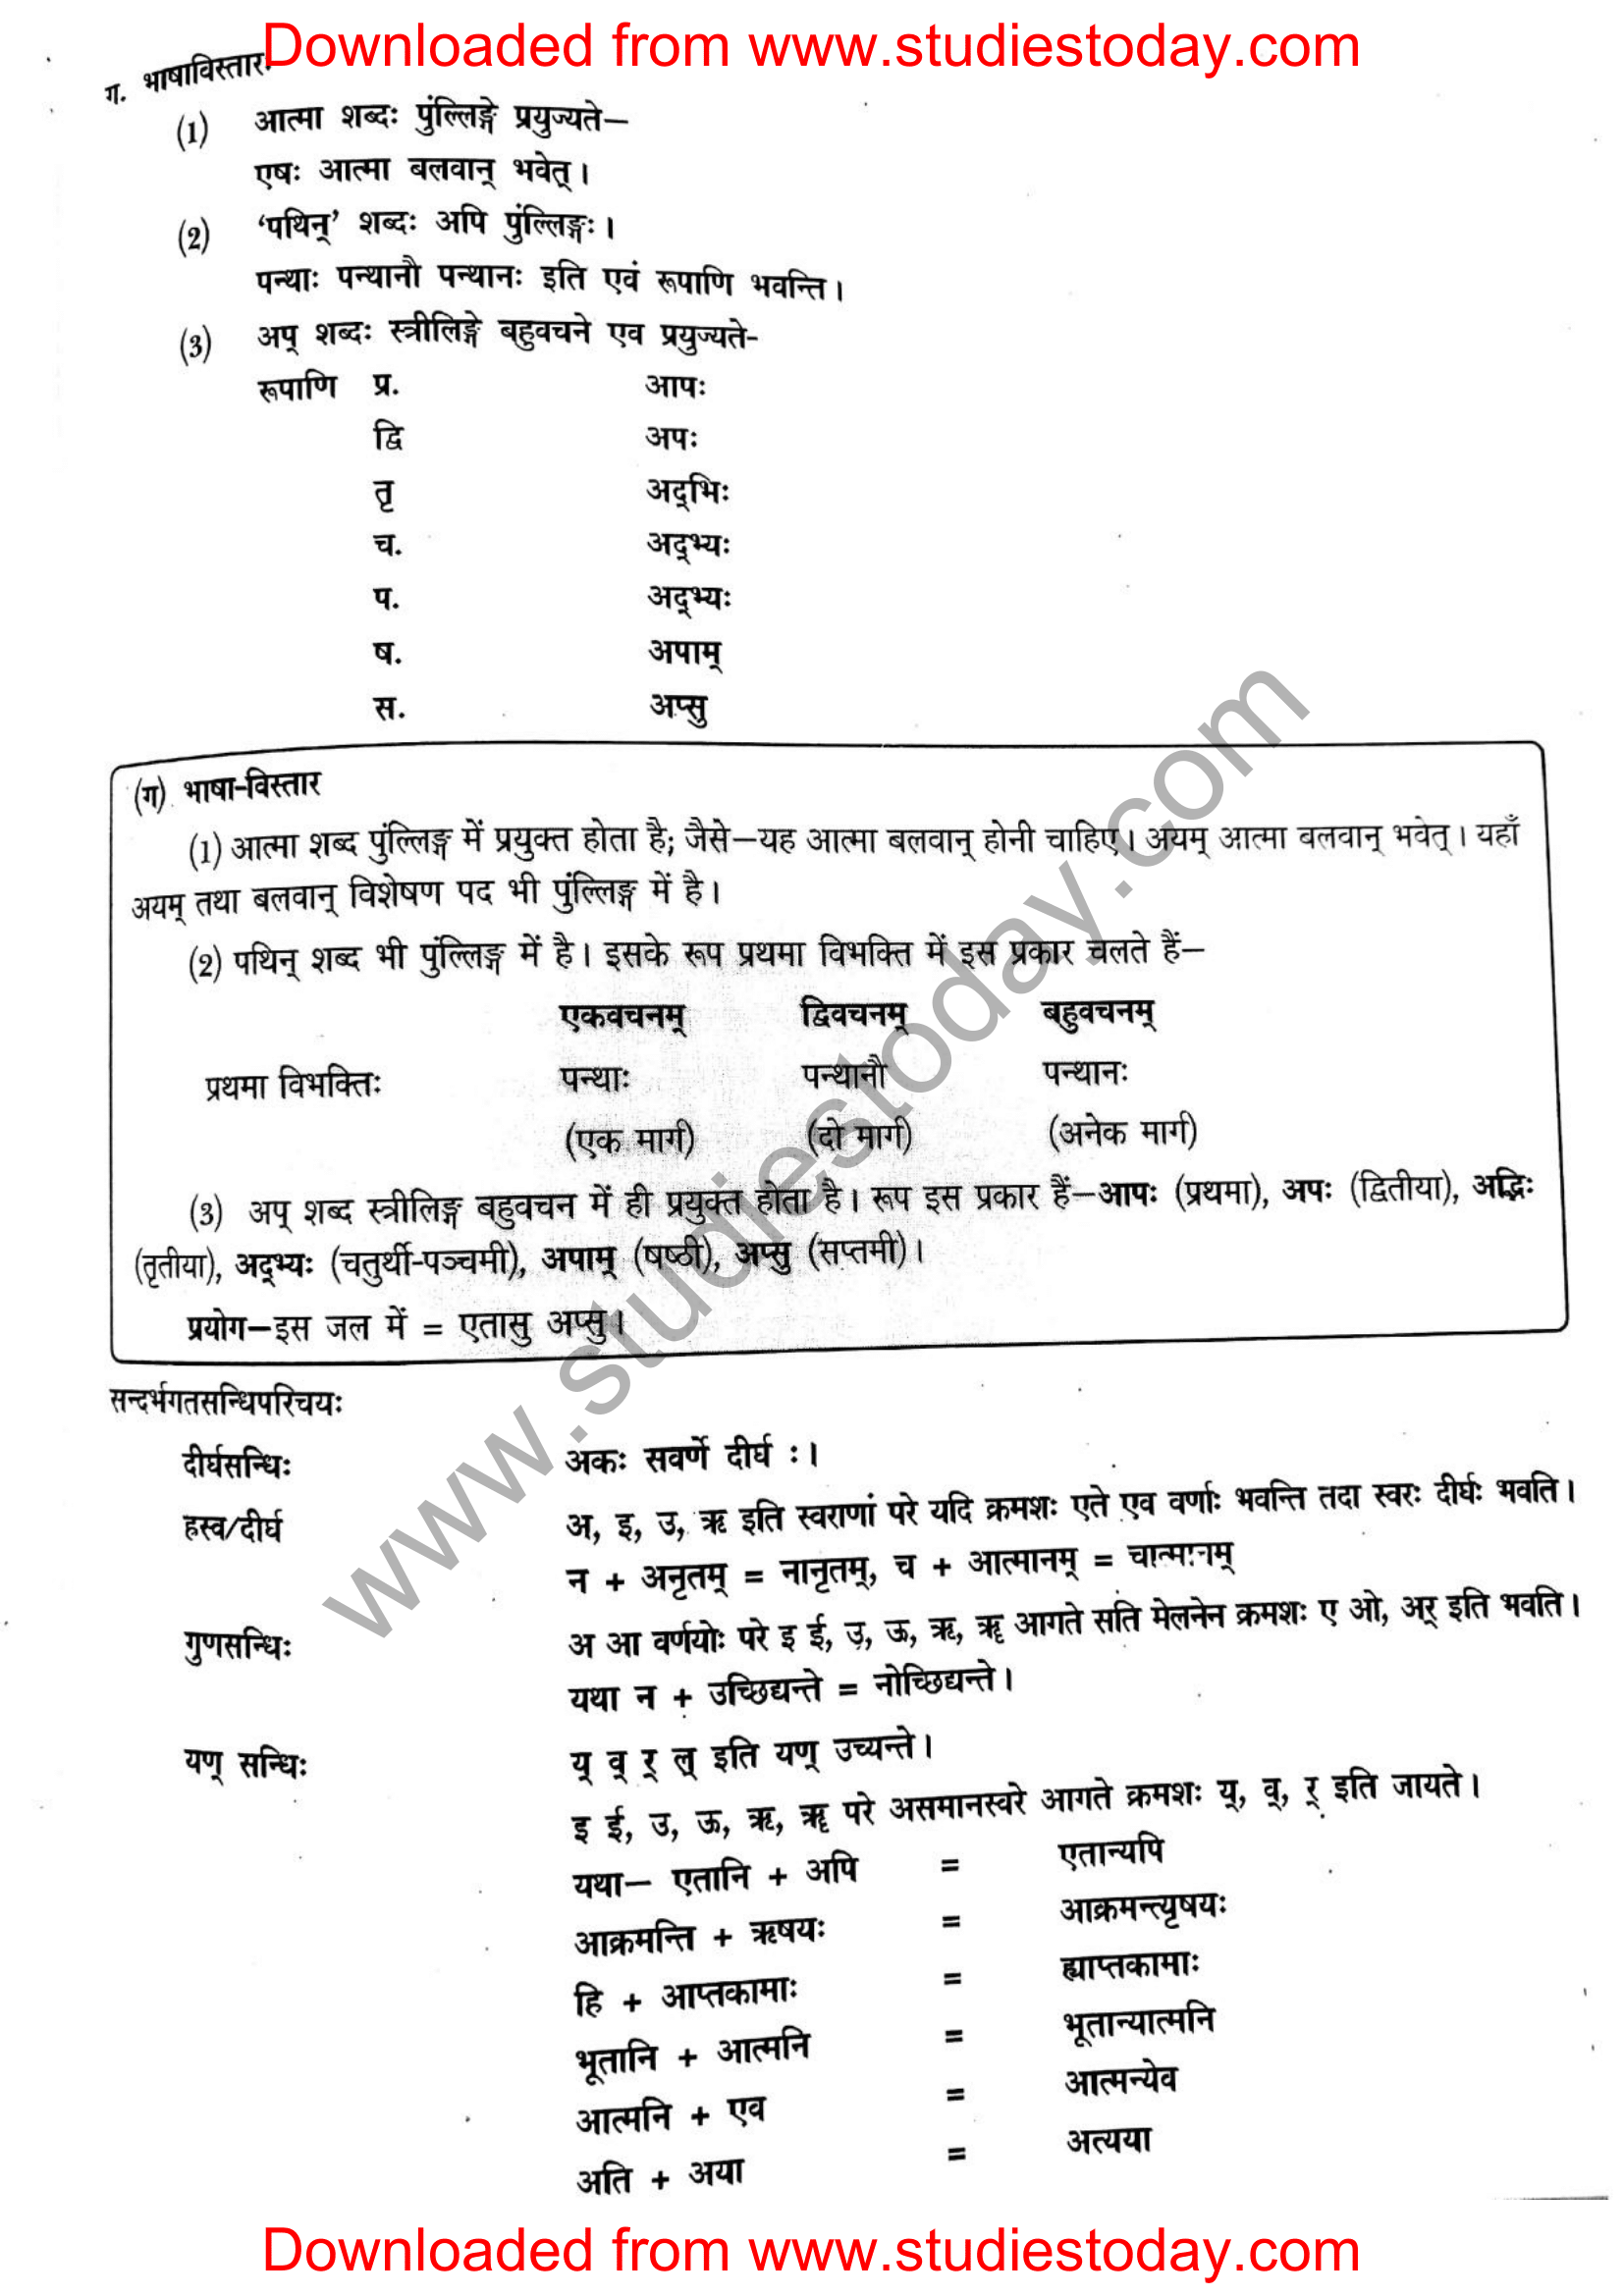 ncert-solutions-class-12-sanskrit-ritikia-chapter-1-11